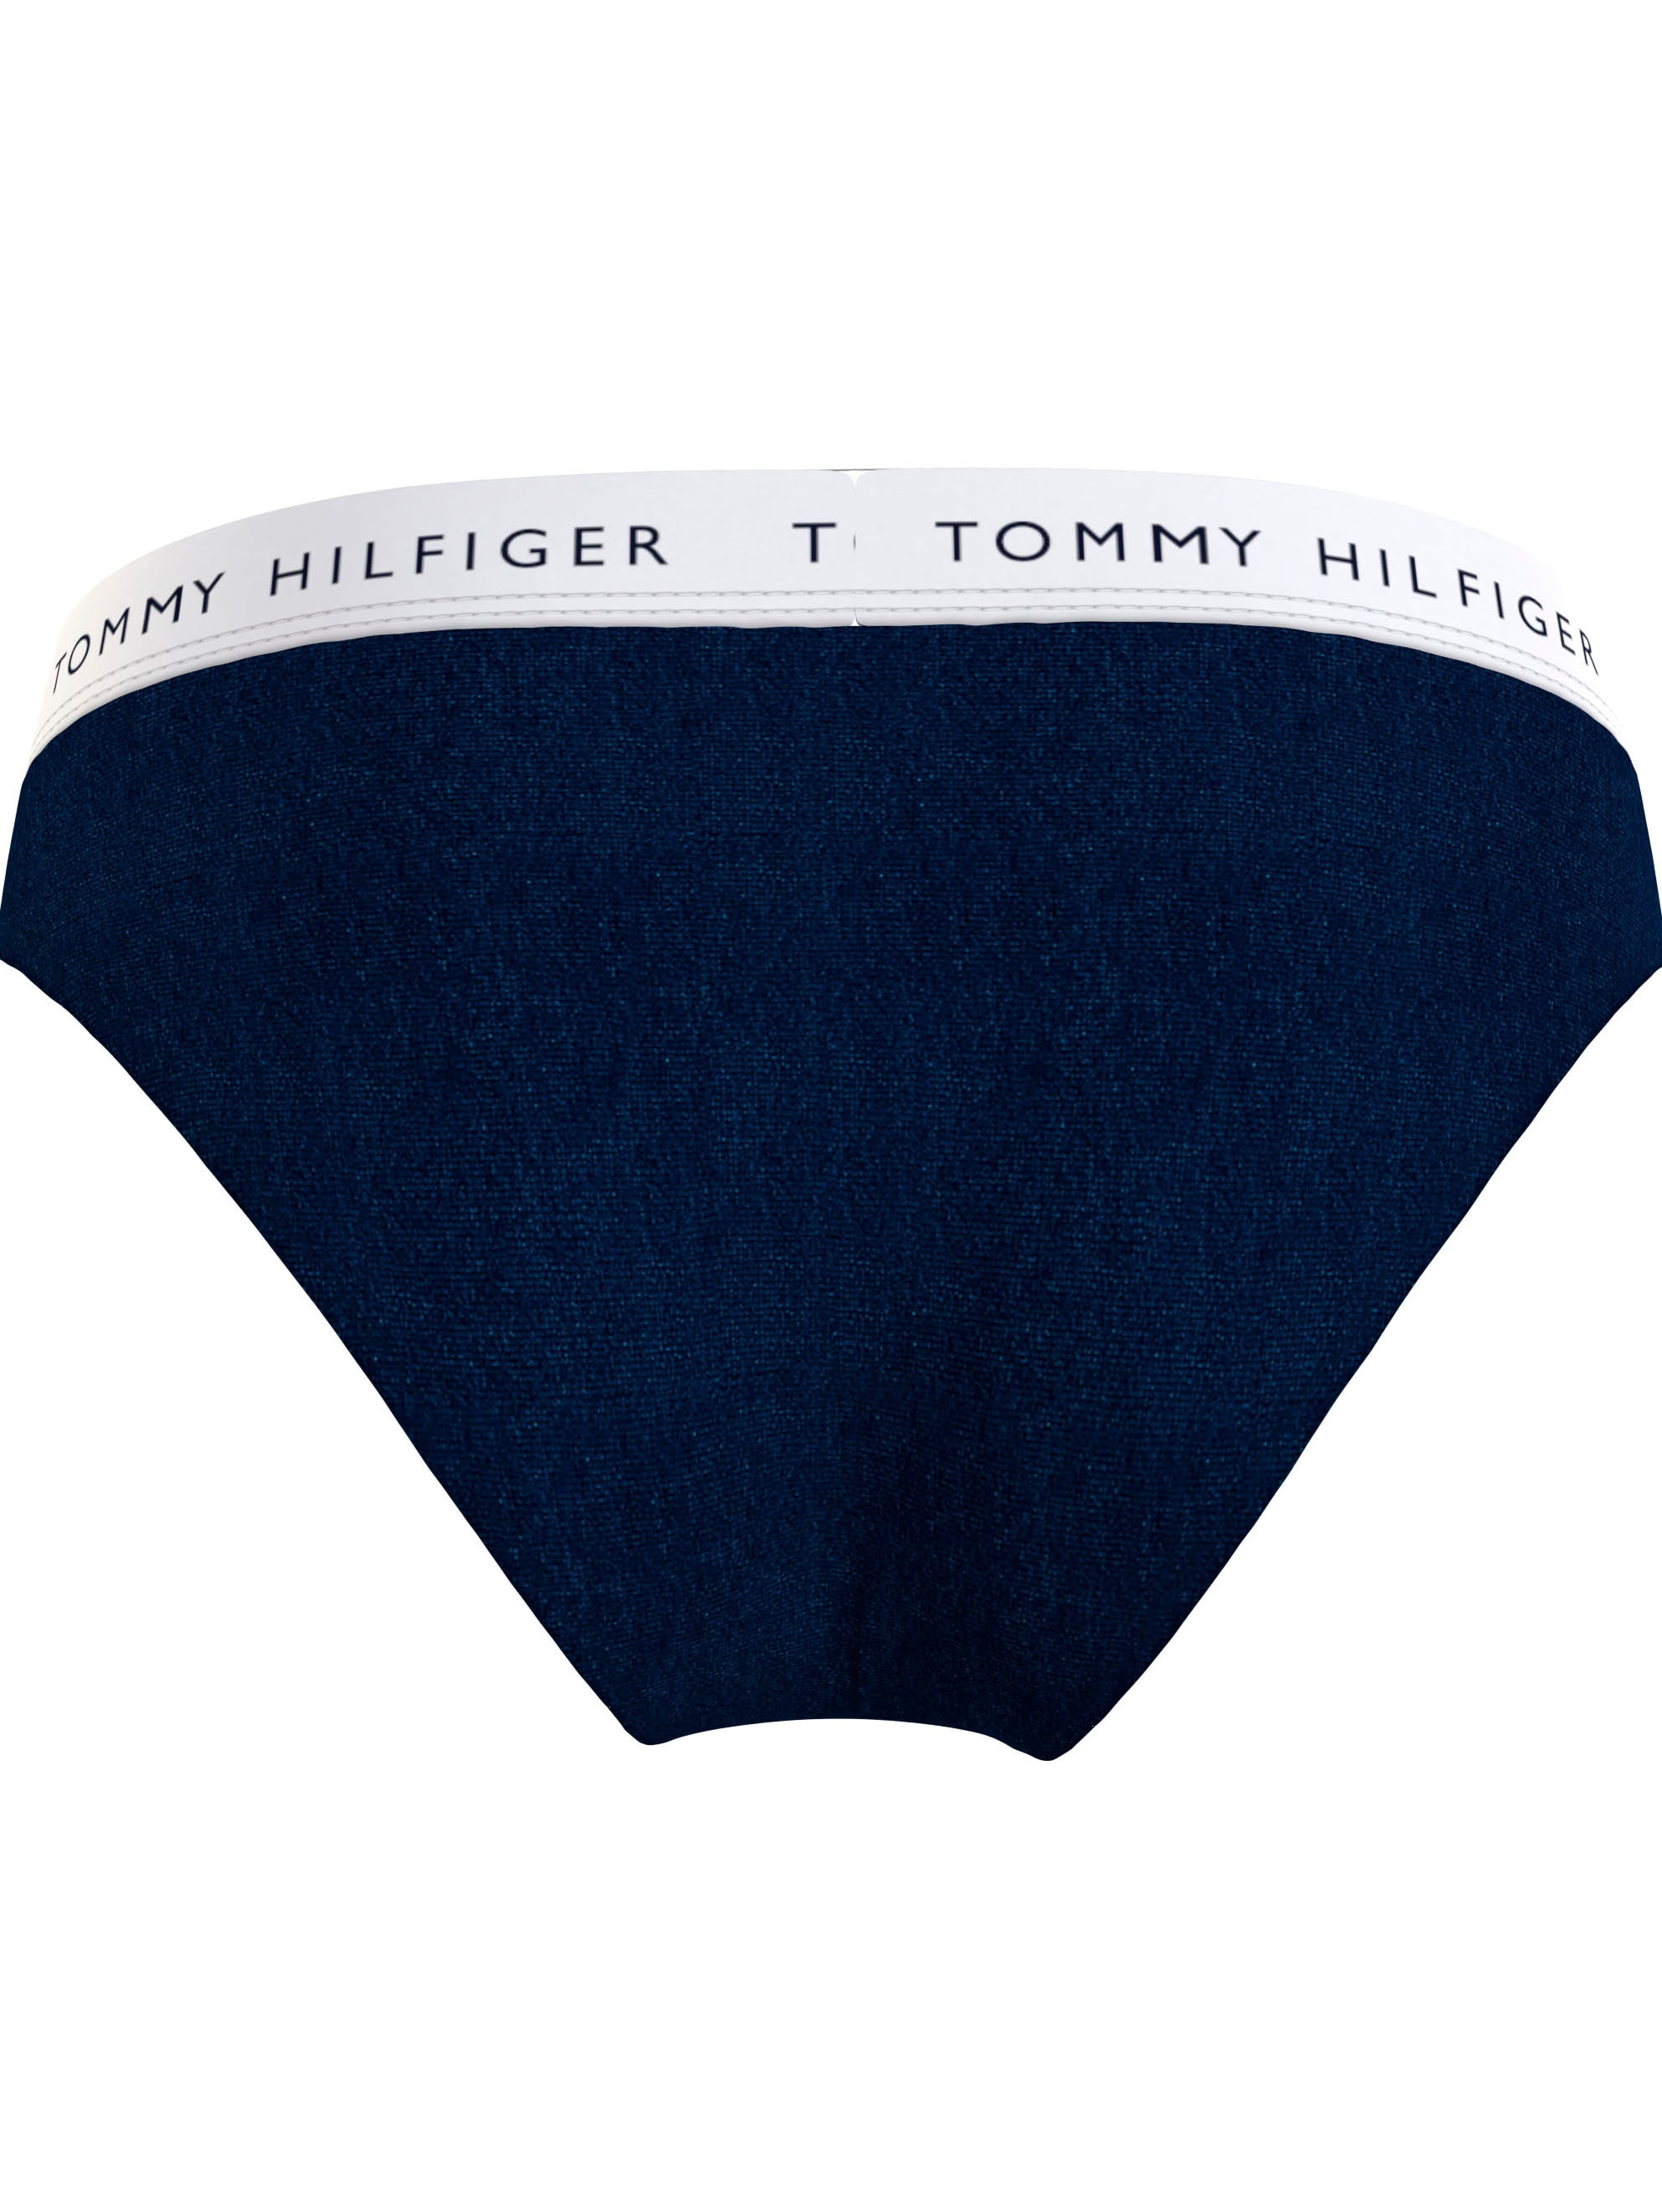 Tommy Hilfiger Underwear Bikinislip, Hilfiger im Tommy (Packung, Shop Online 7er-Pack), OTTO St., mit Logobund 7